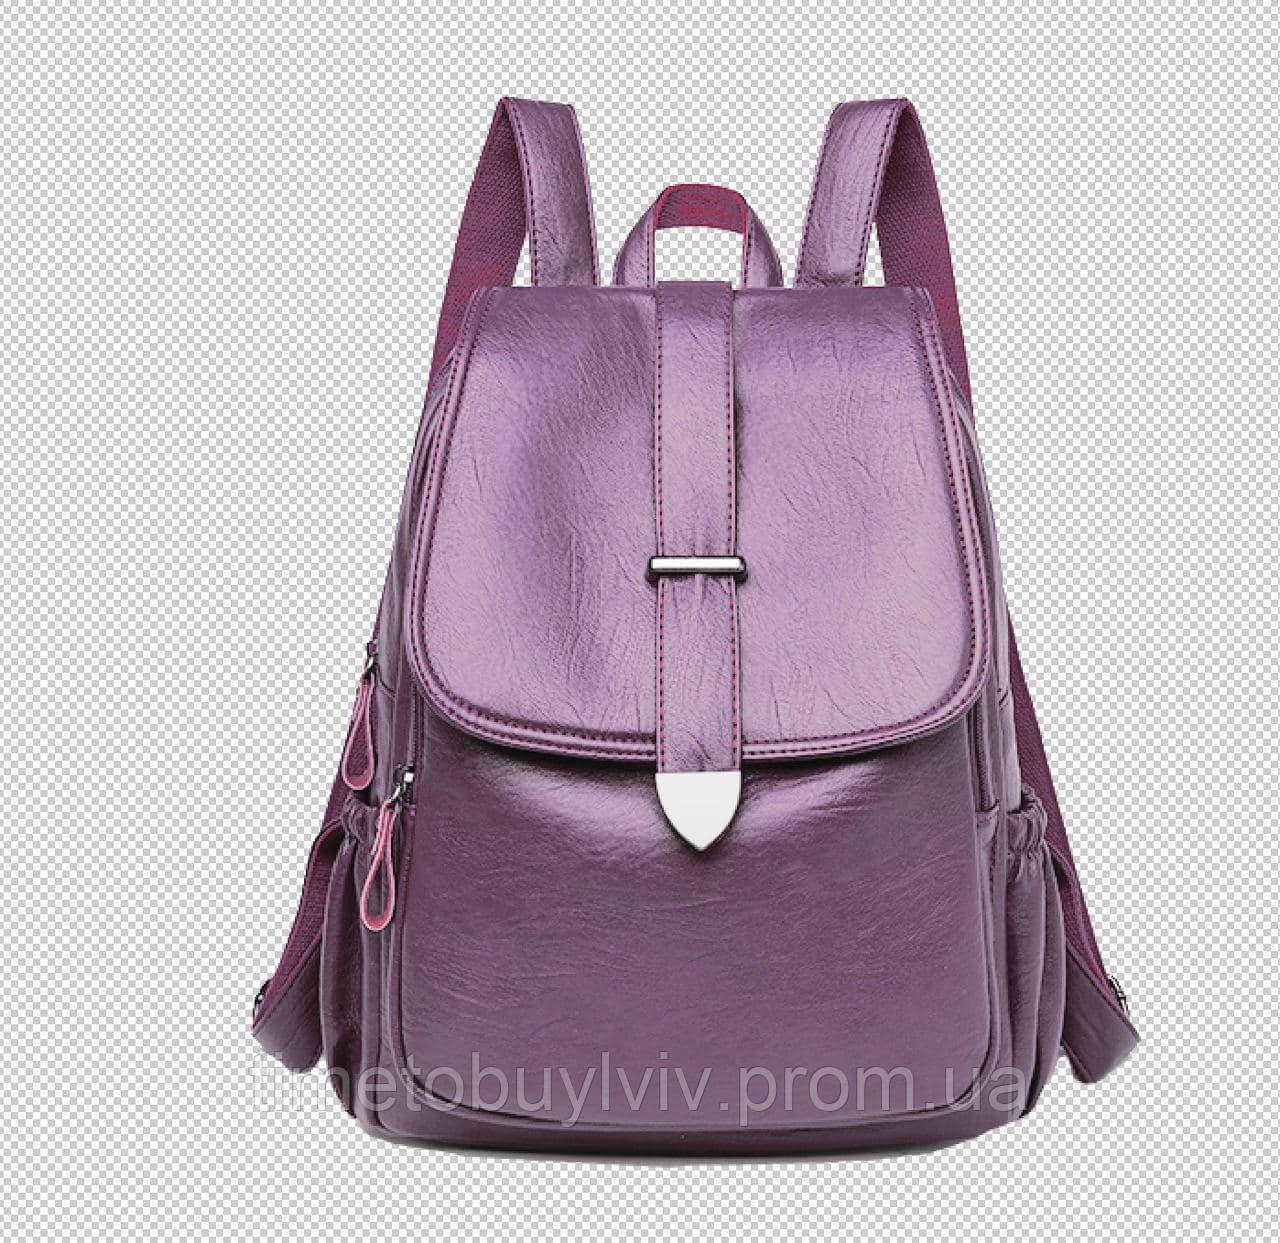 

Женский кожаный рюкзак Пурпурный